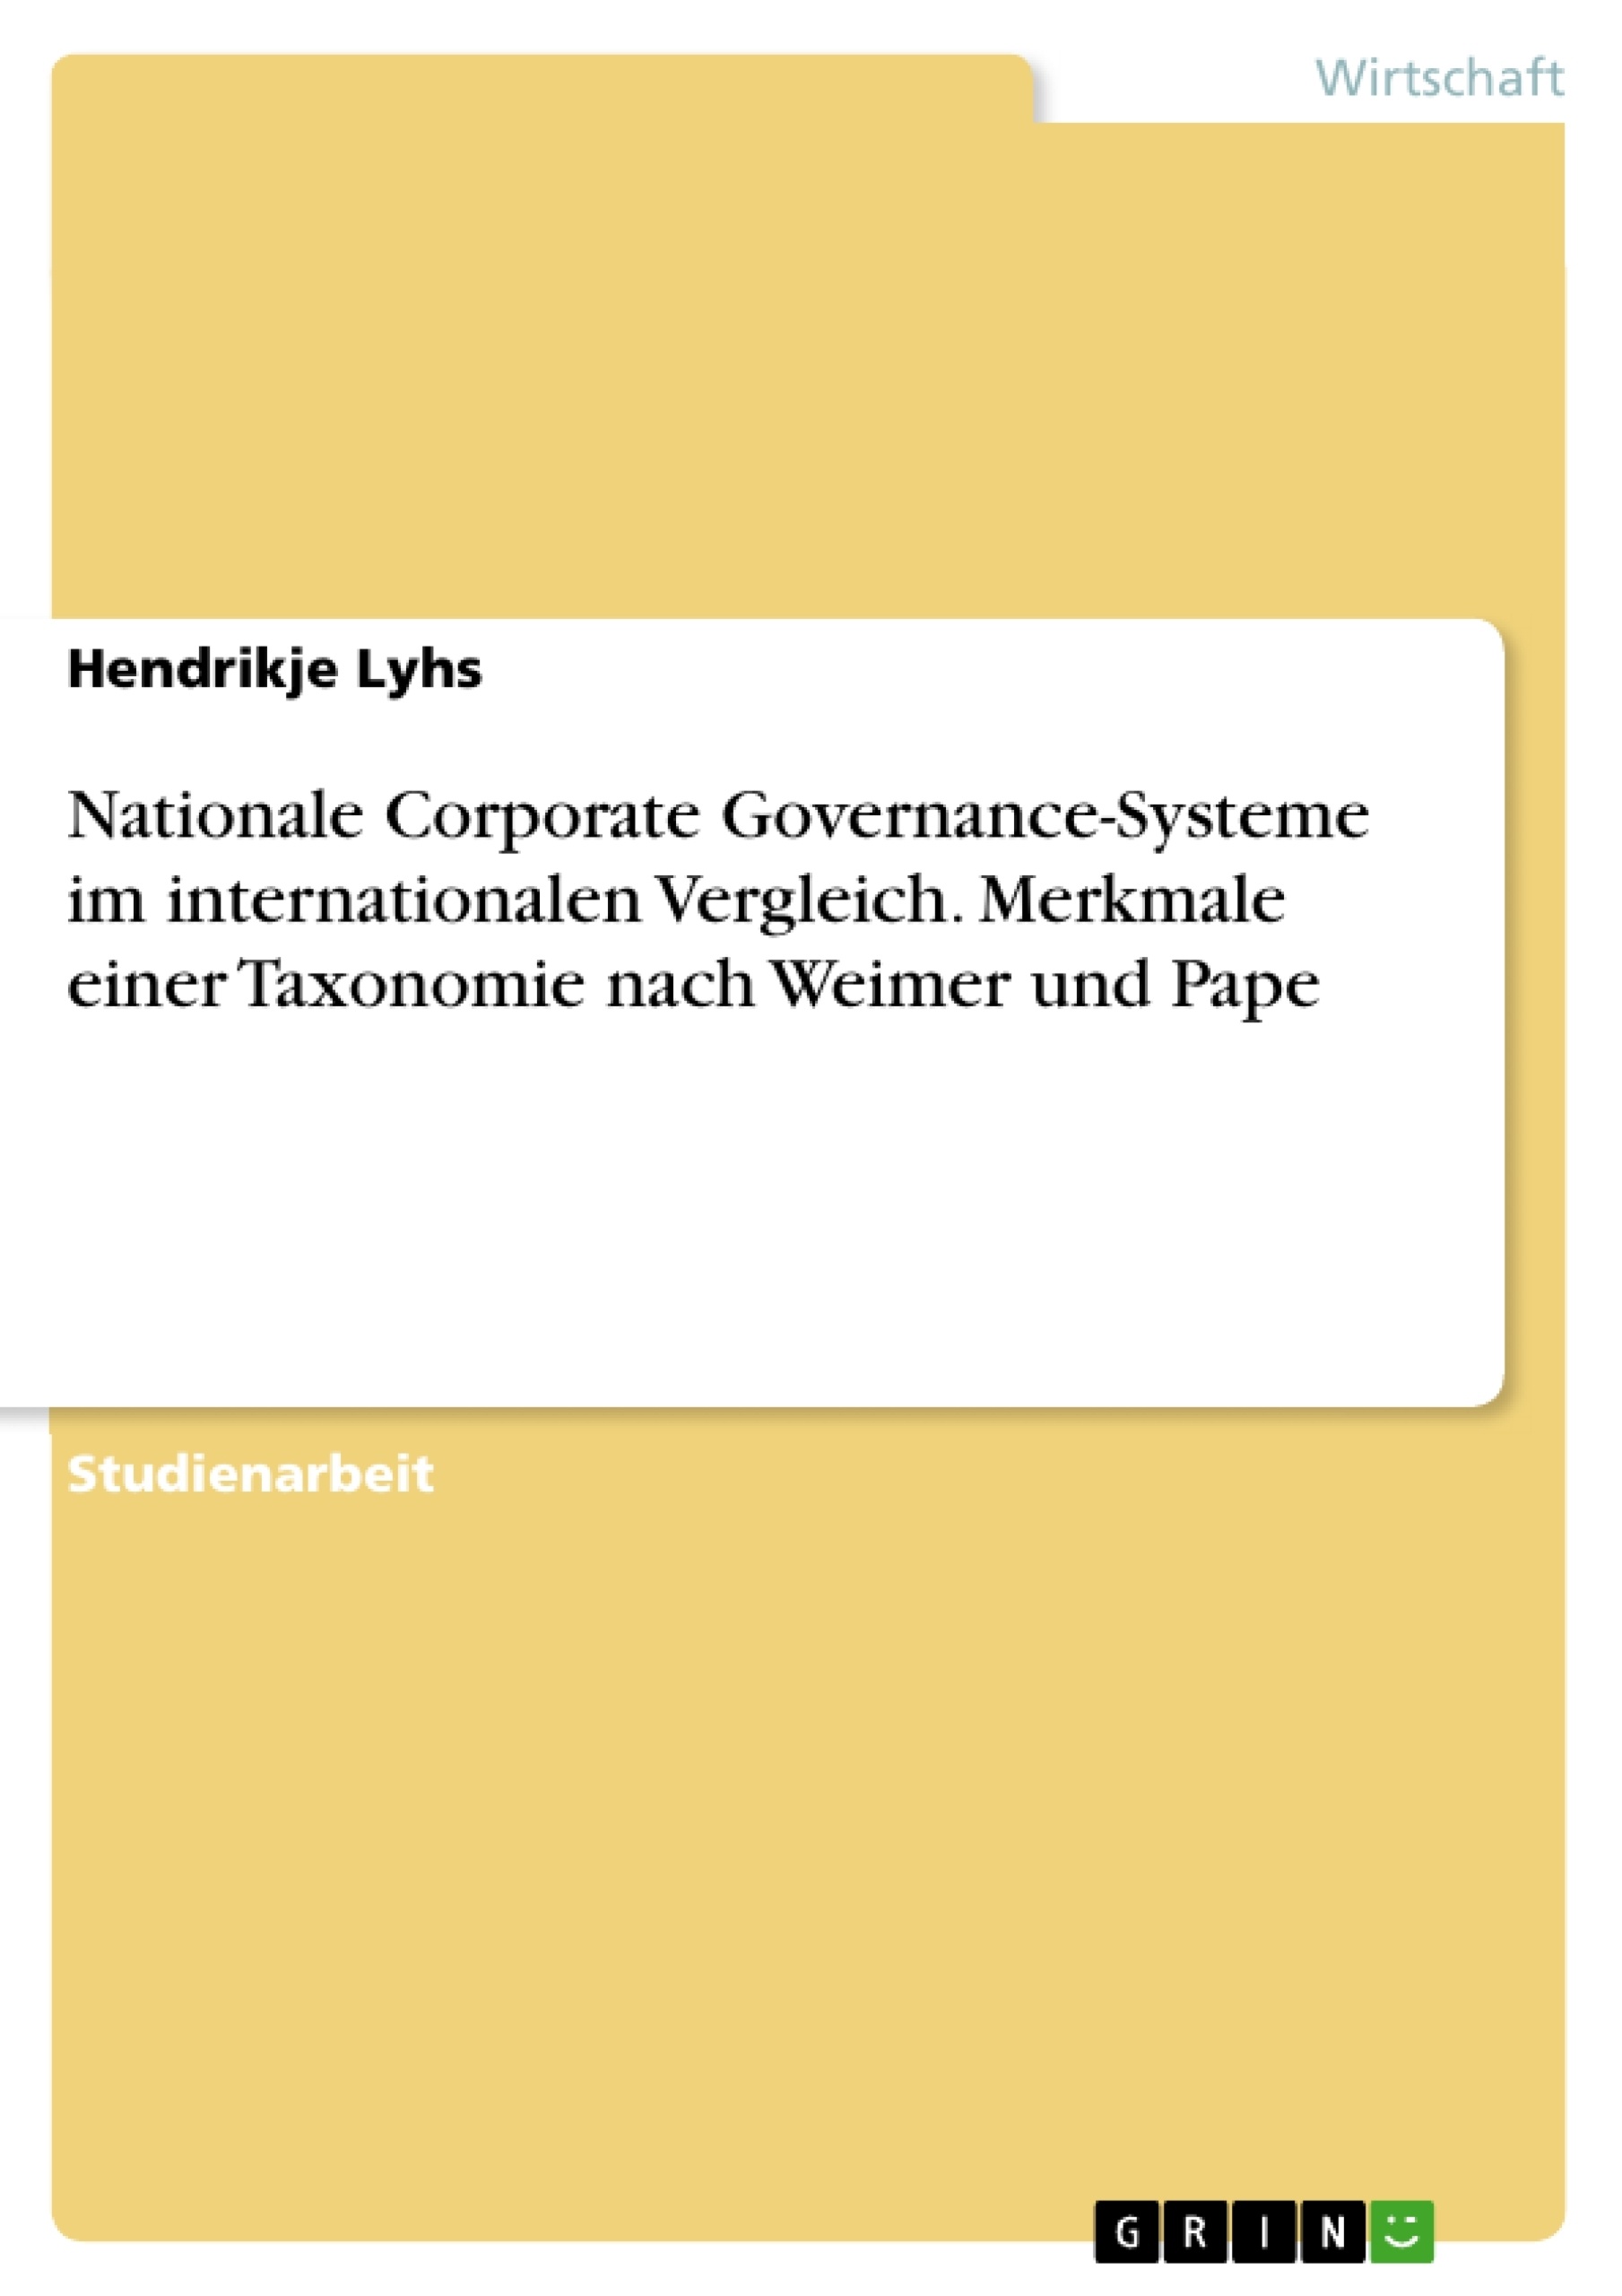 Title: Nationale Corporate Governance-Systeme im internationalen Vergleich. Merkmale einer Taxonomie nach Weimer und Pape